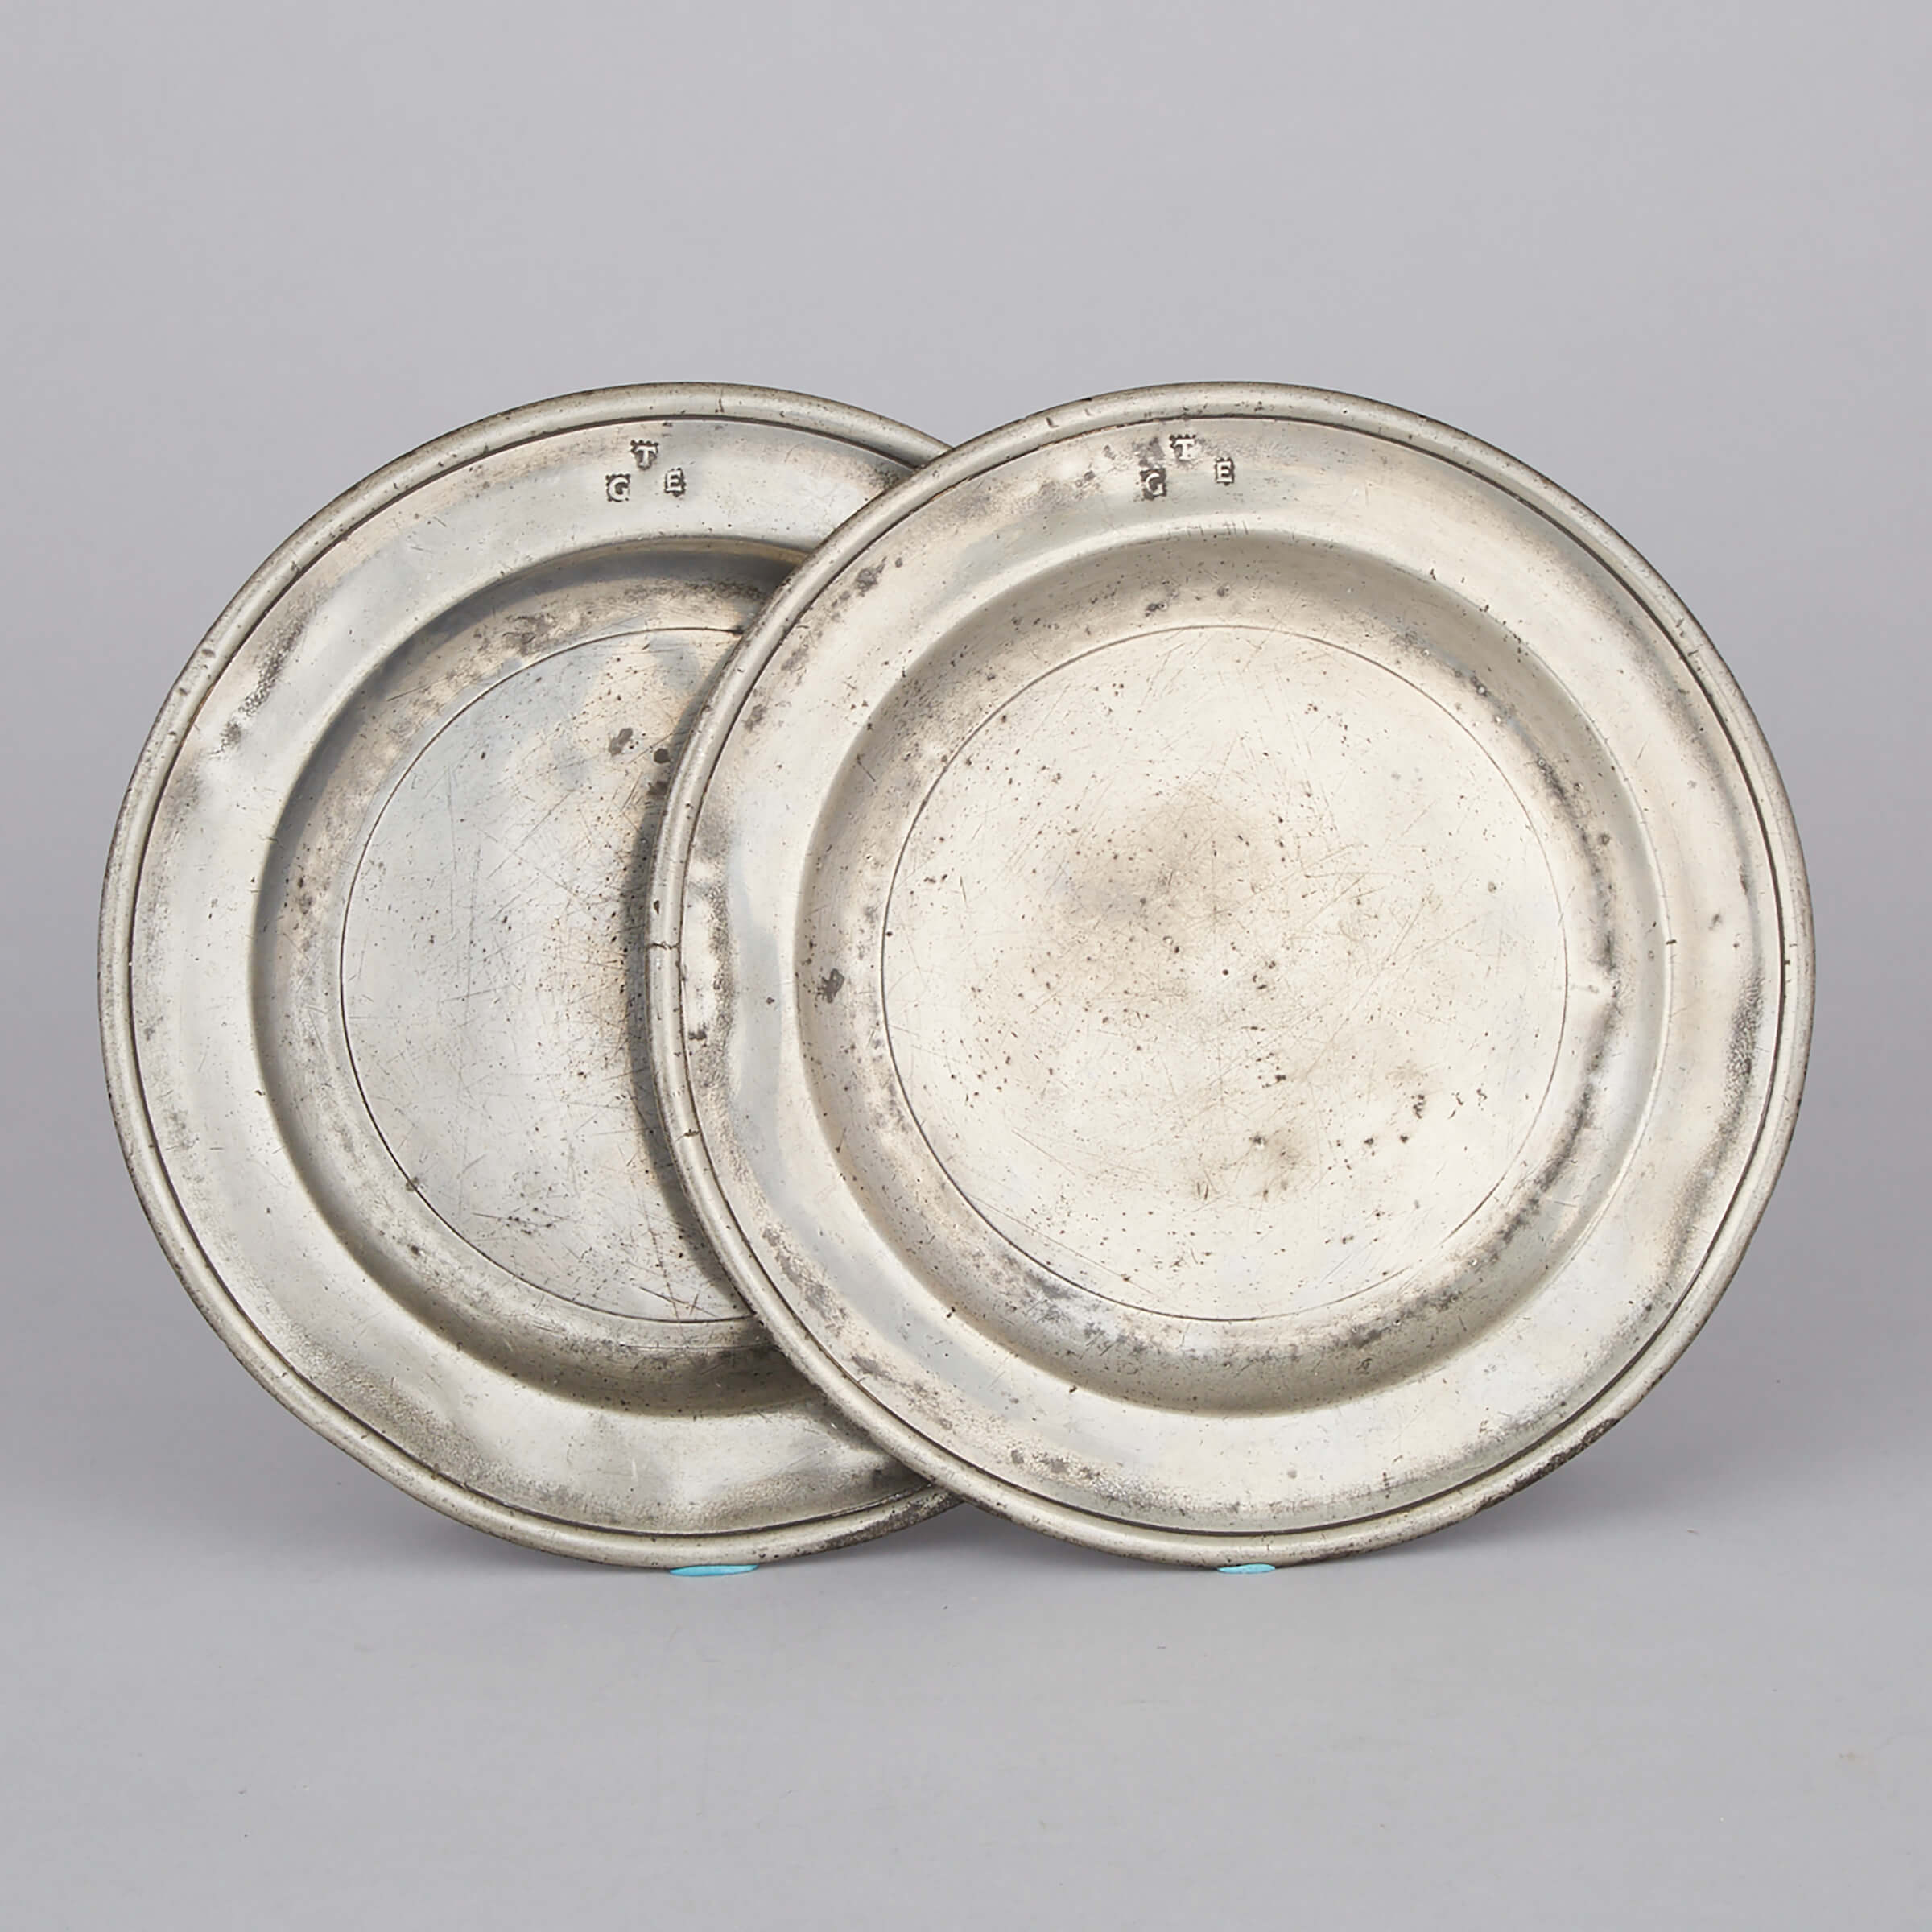 Pair of English Pewter Single Reed Plates, Thomas Carter, London, c.1700